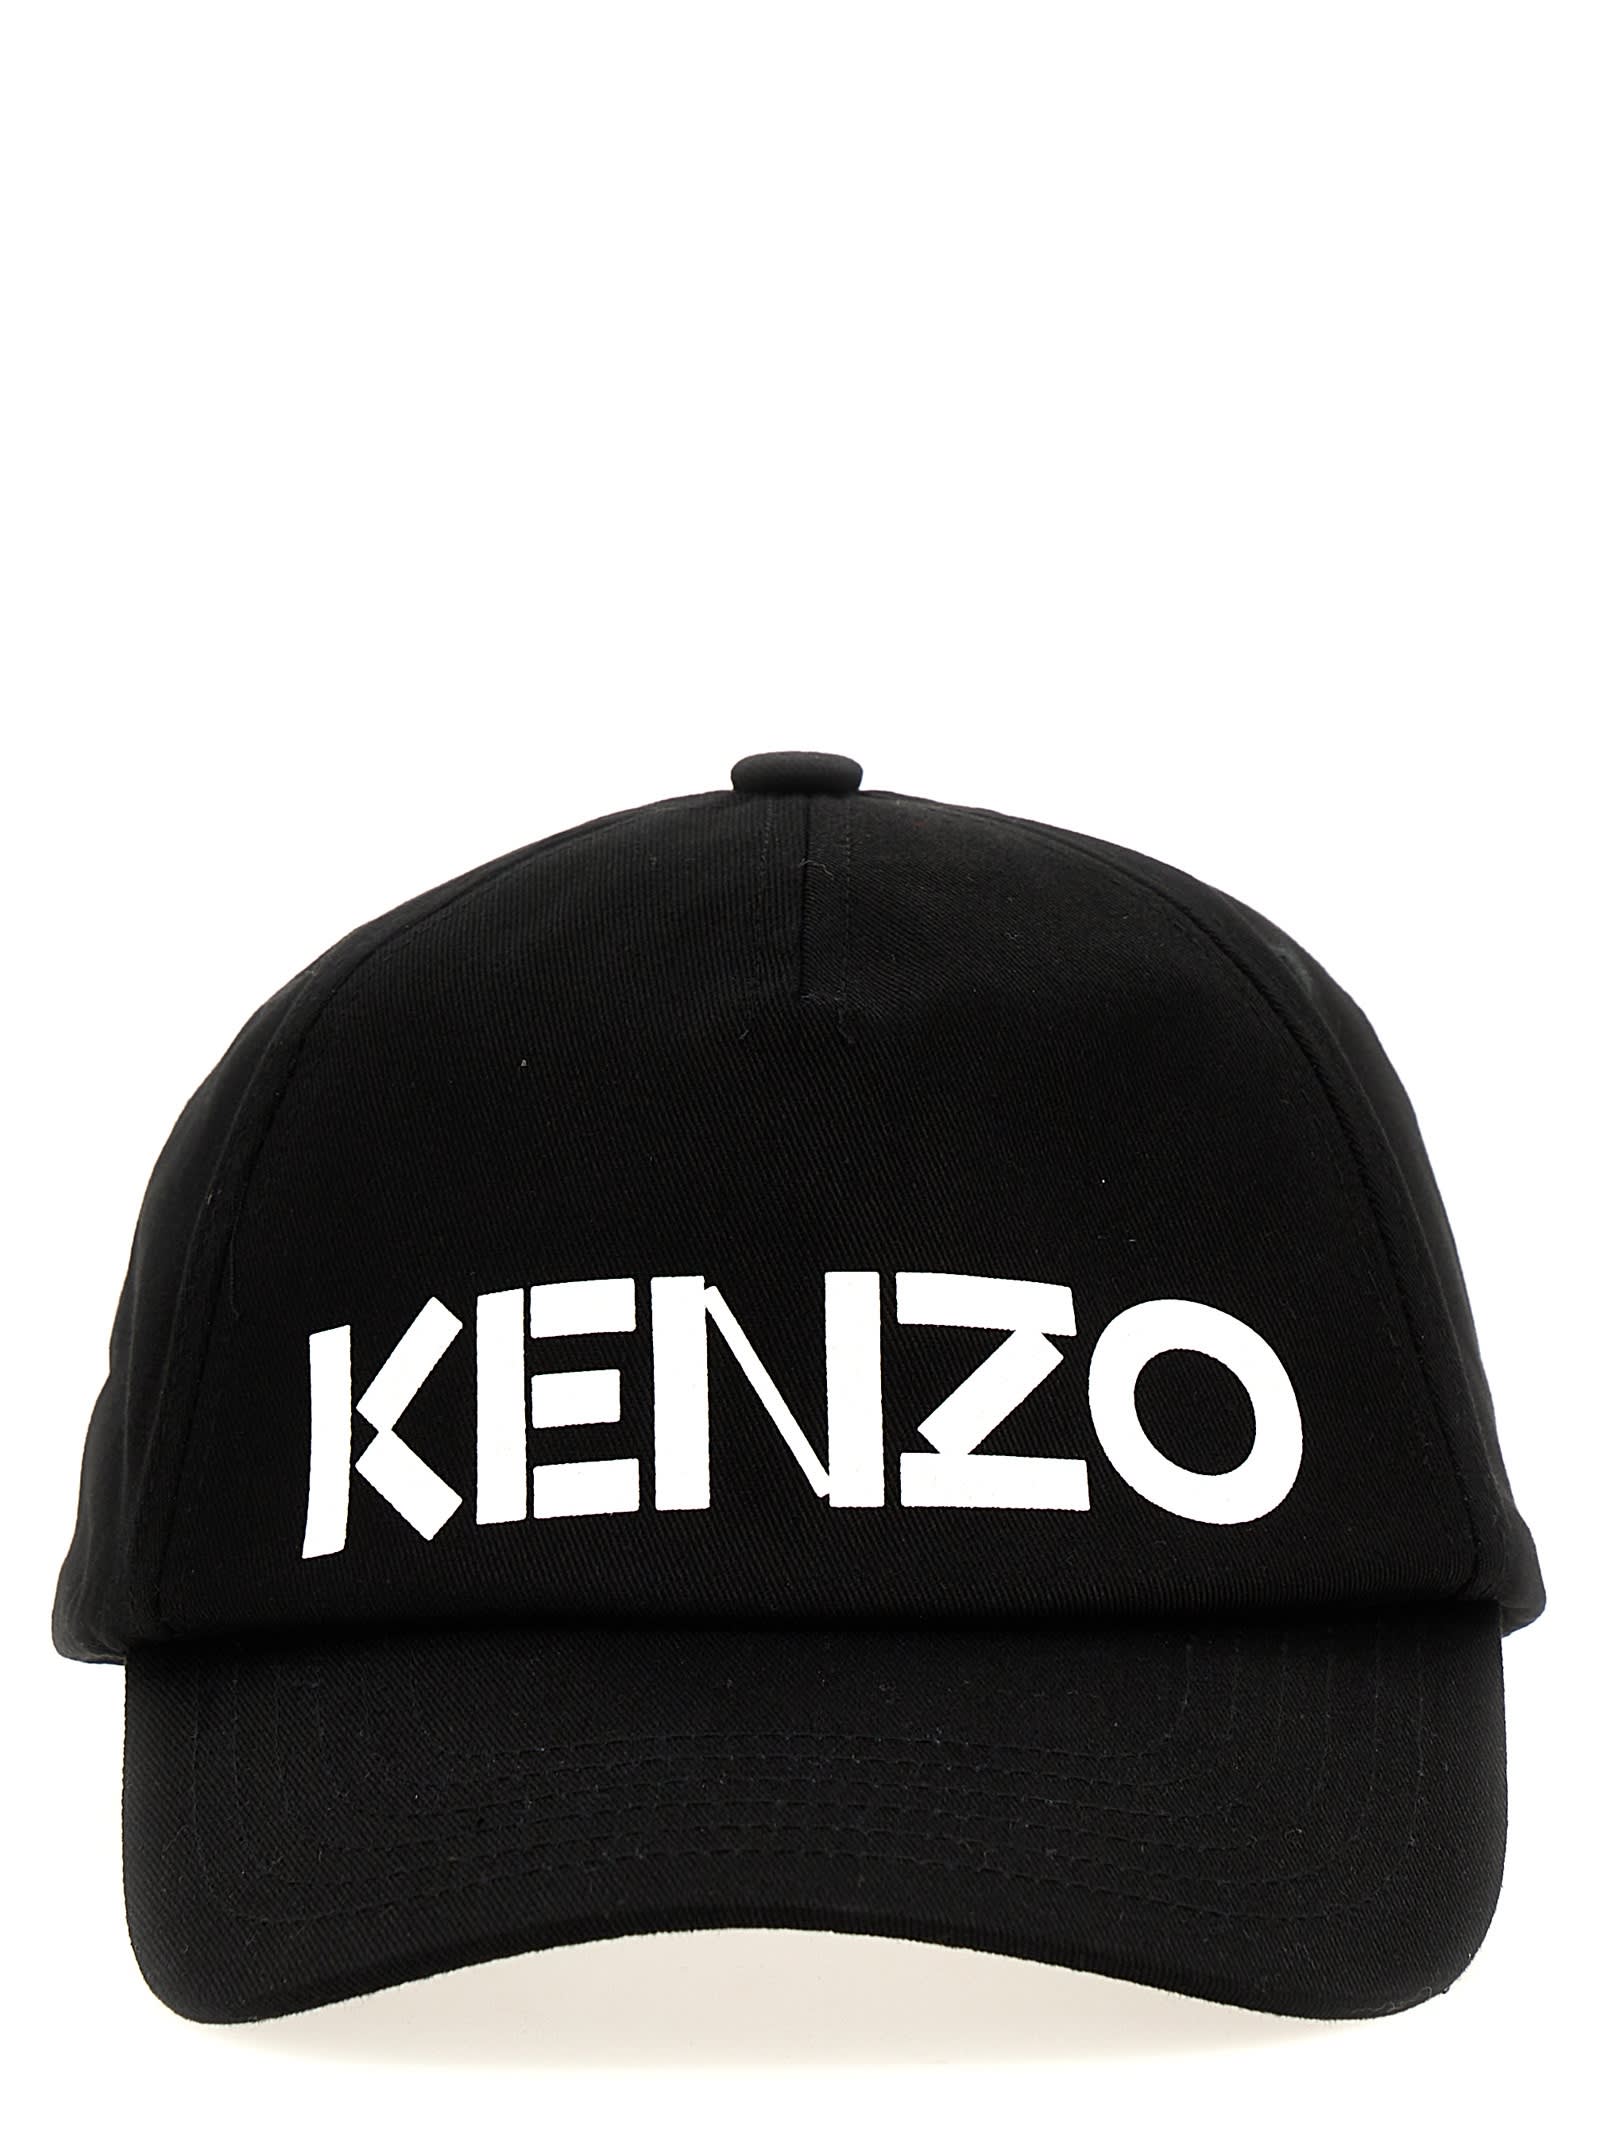 KENZO LOGO PRINTED CAP